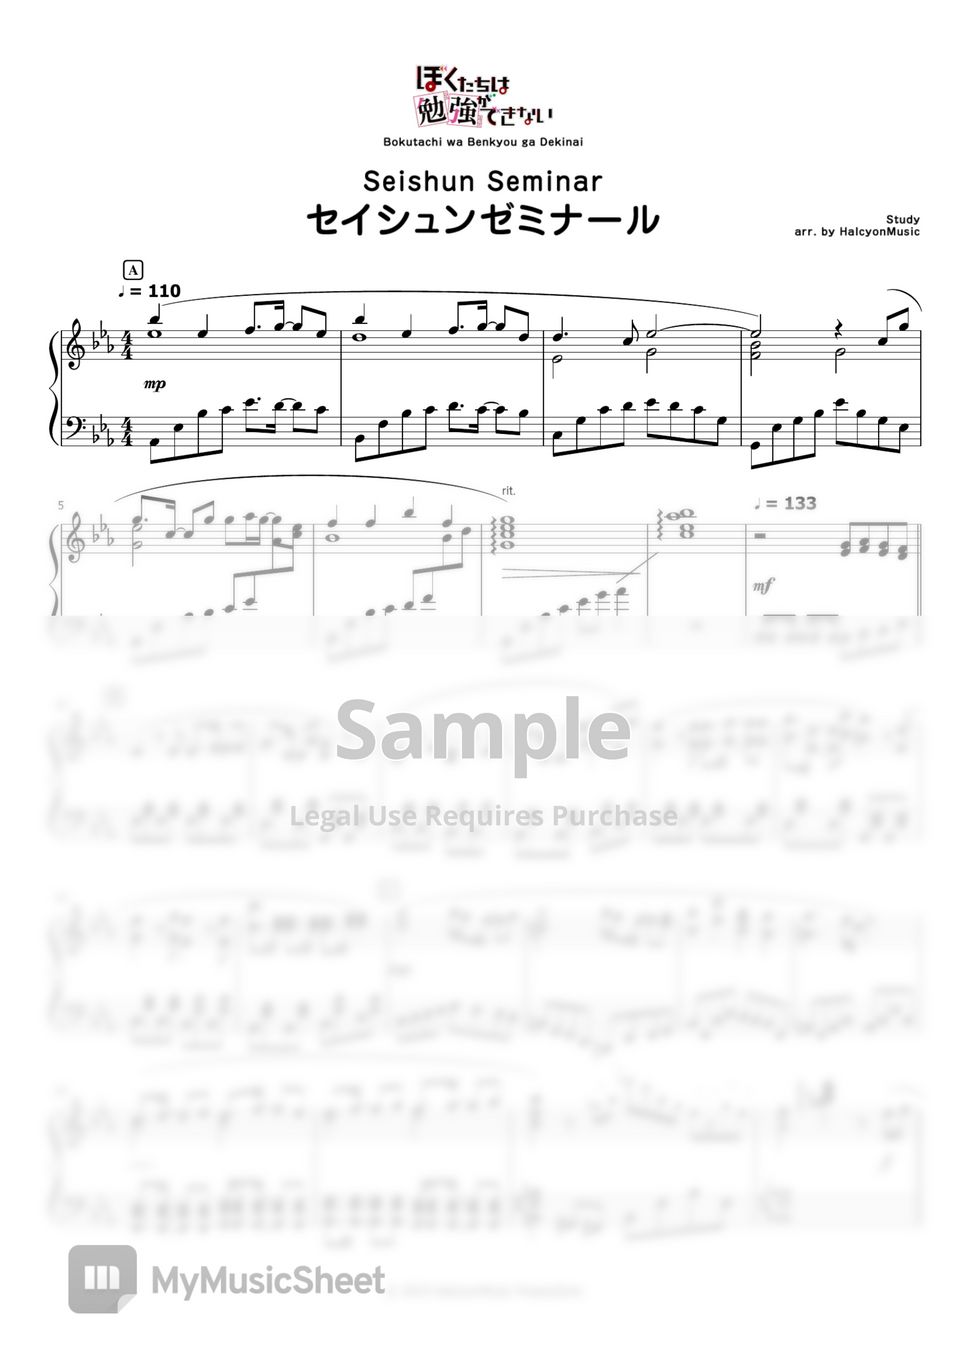 Study - Seishun Seminar (Bokutachi wa Benkyou ga Dekinai OP) by HalcyonMusic